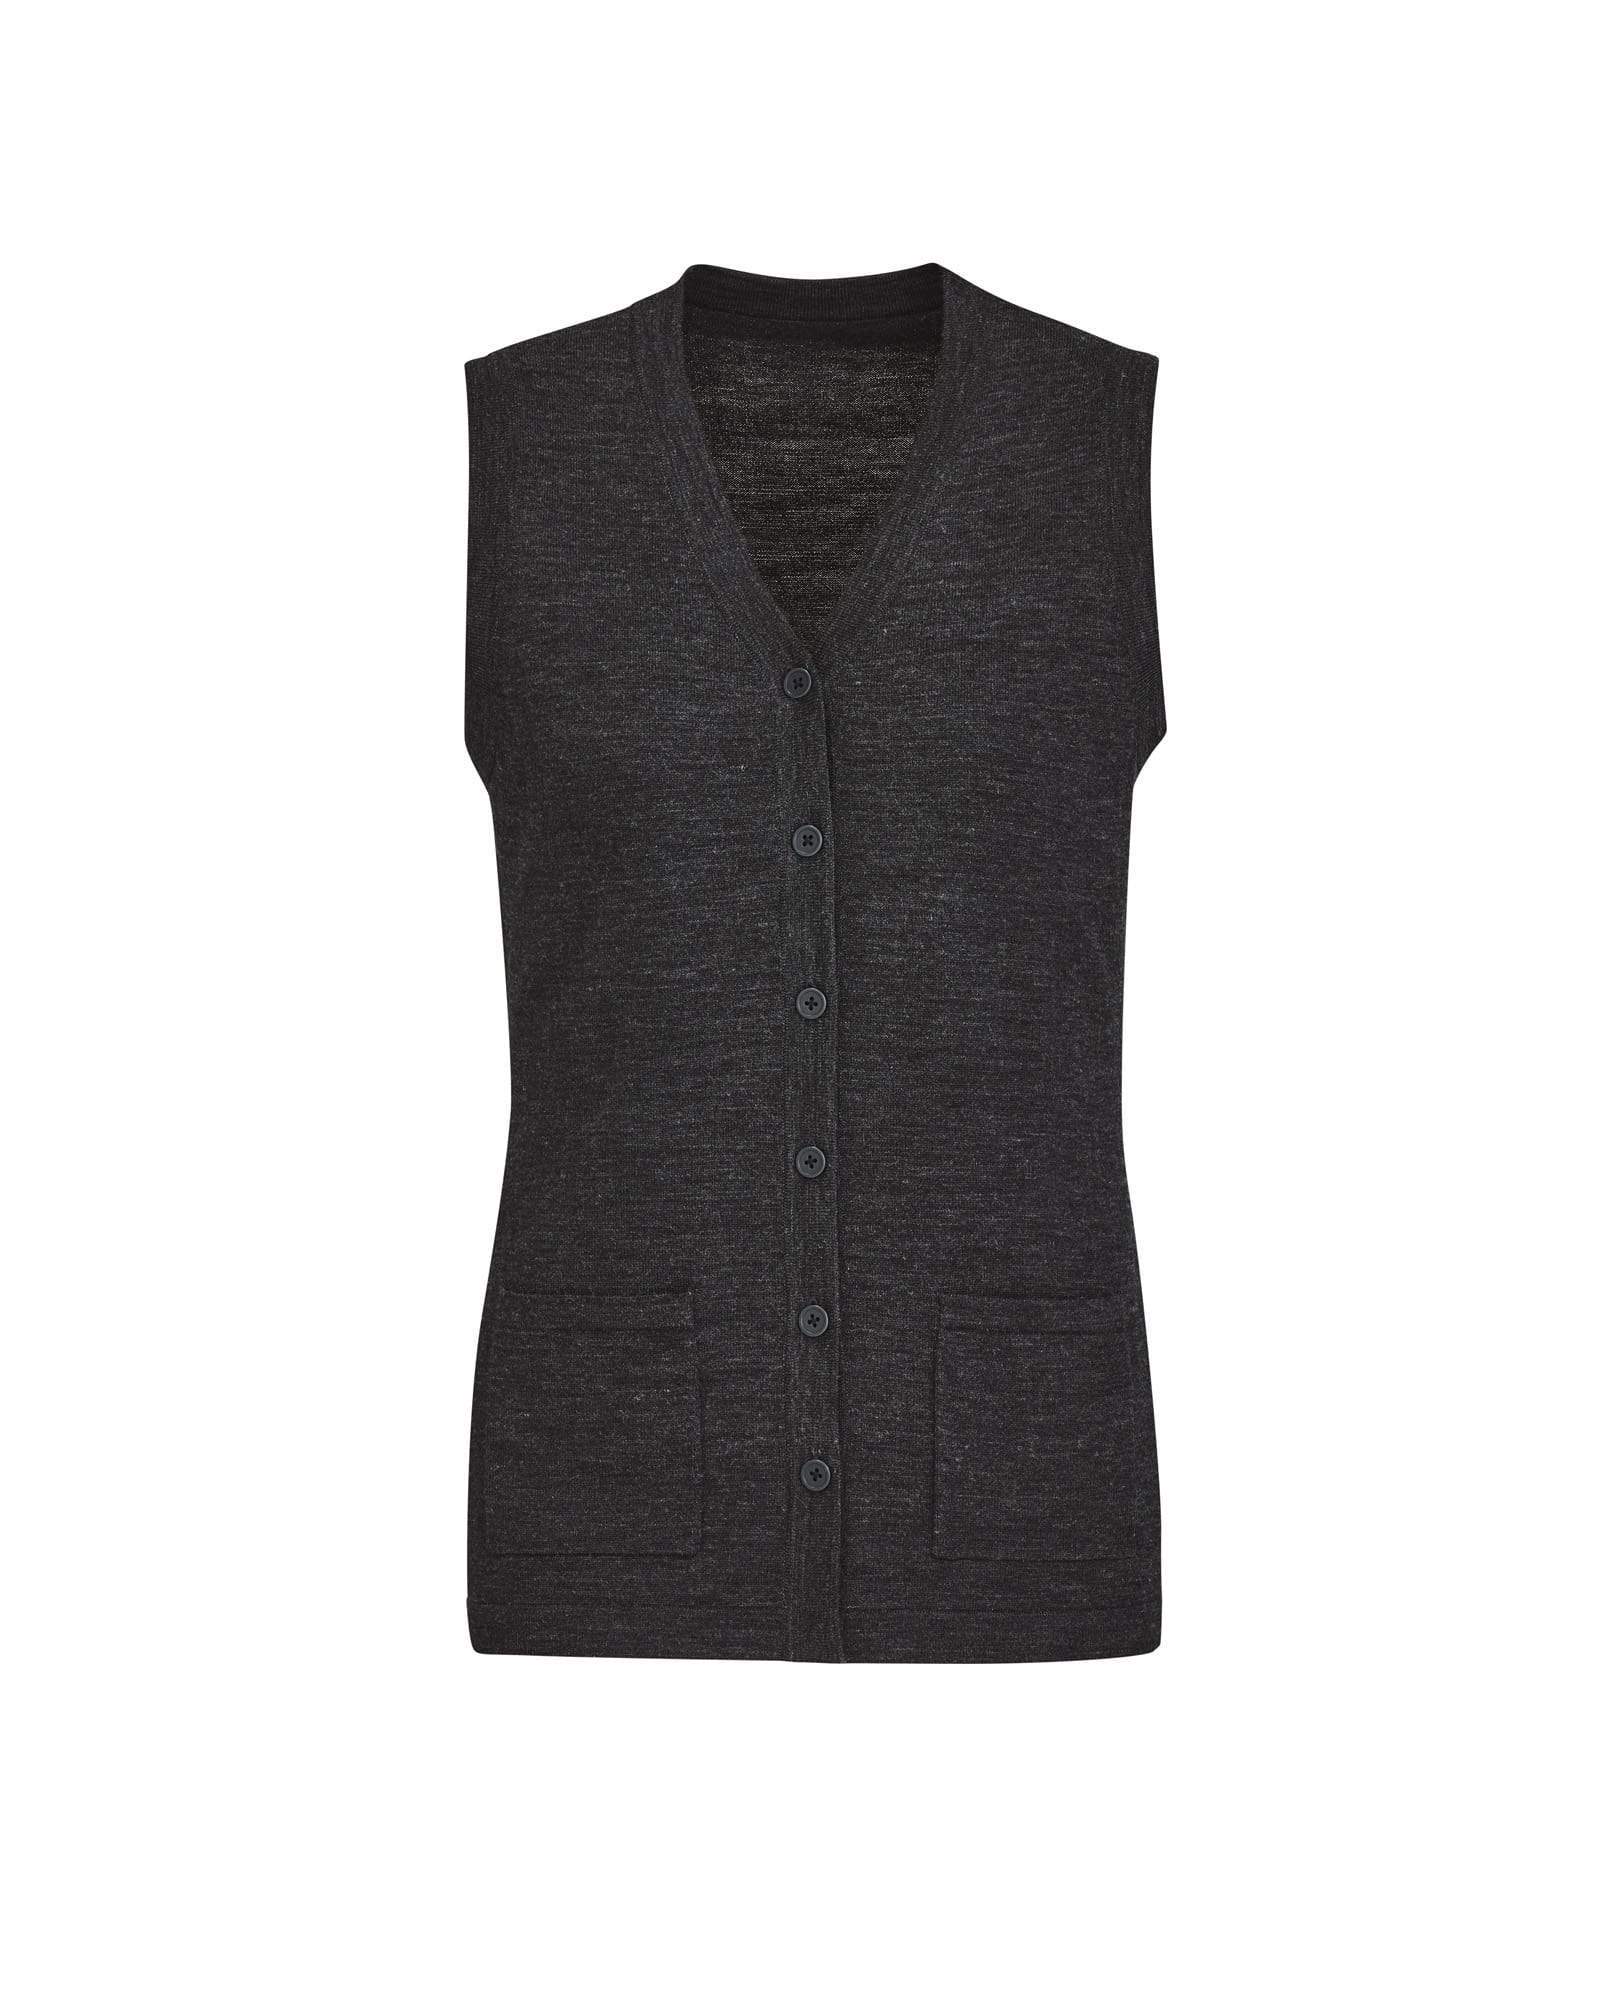 Biz Care Womens Button Front Knit Vest CK961LV Health & Beauty Biz Care Charcoal XXS 